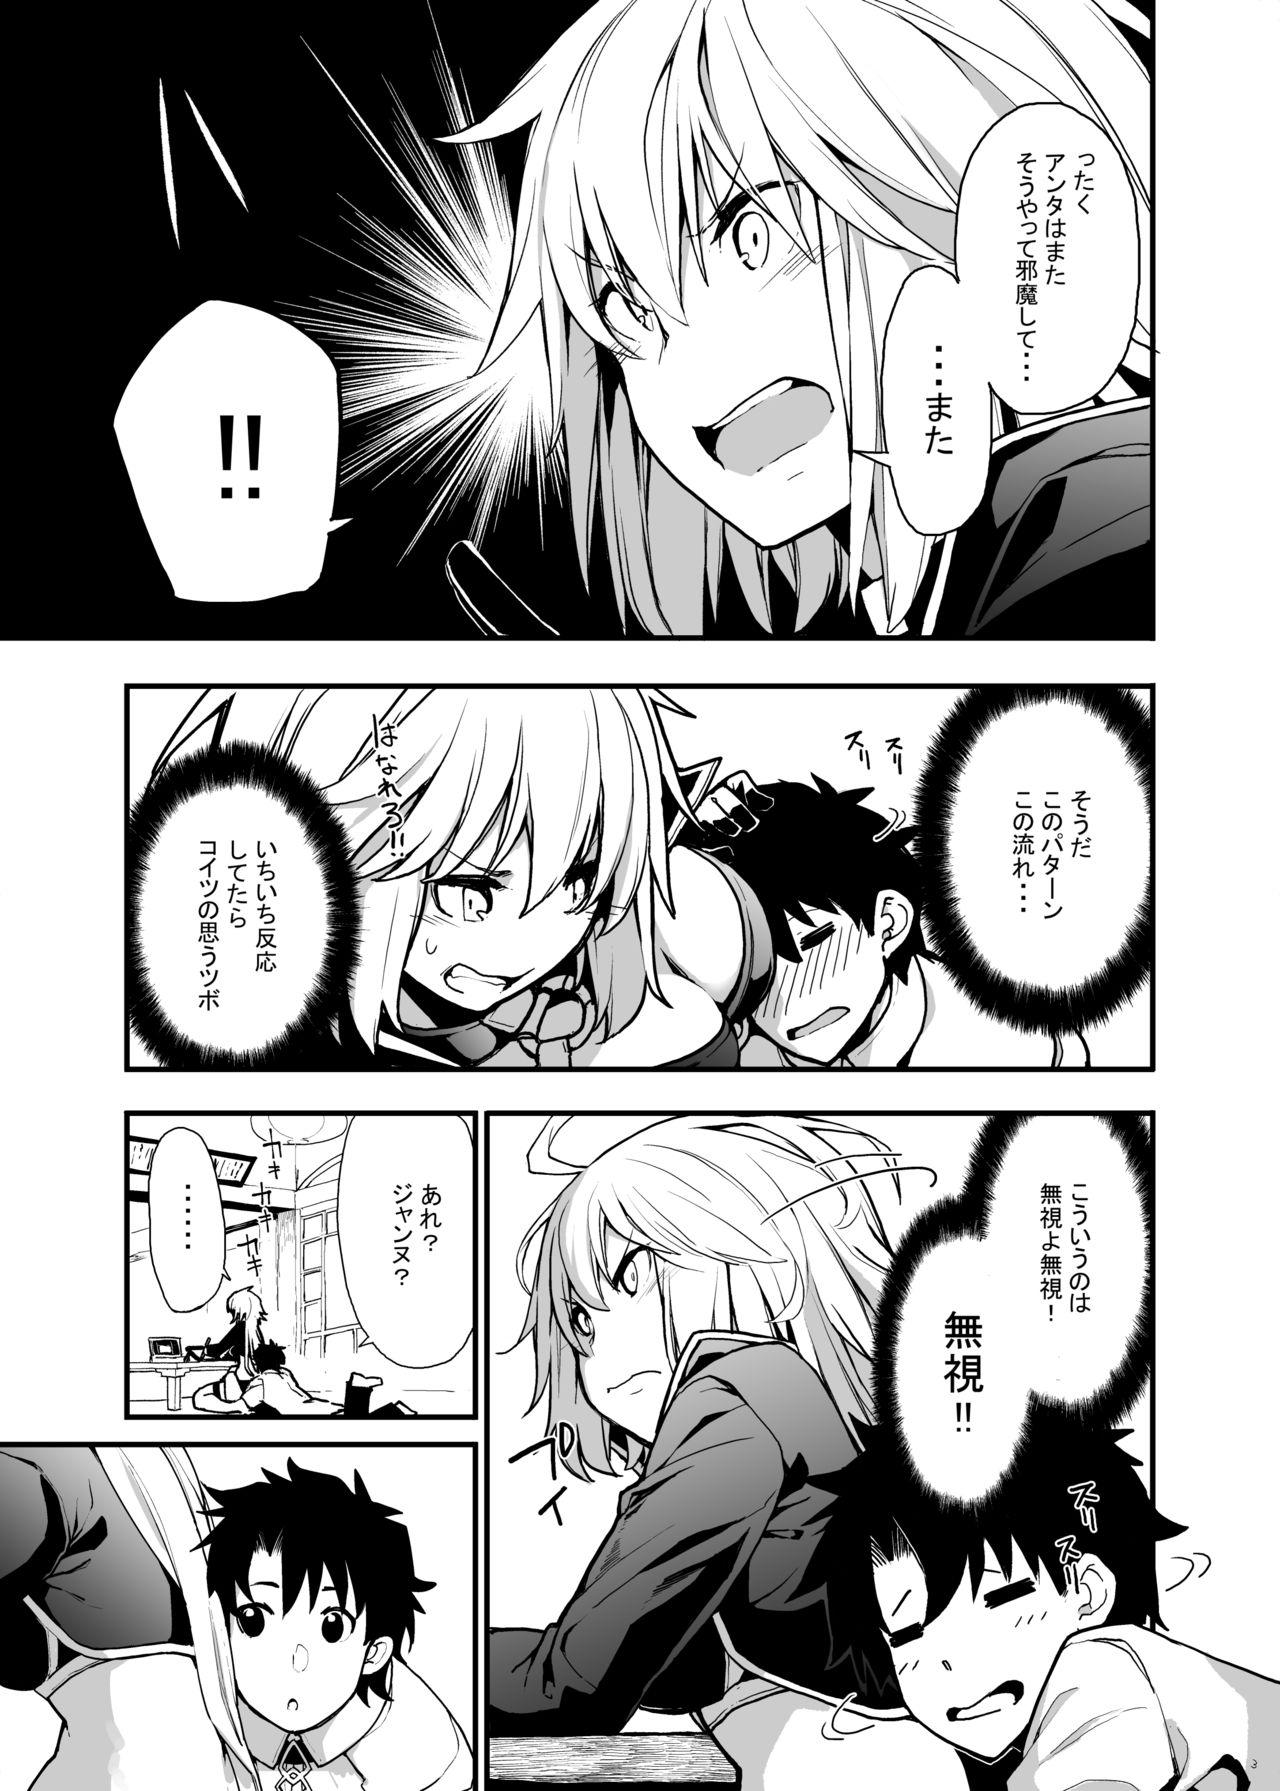 Pegging Kuroneko ga Nyan to Naku. 3 - Fate grand order Hardcore - Page 4